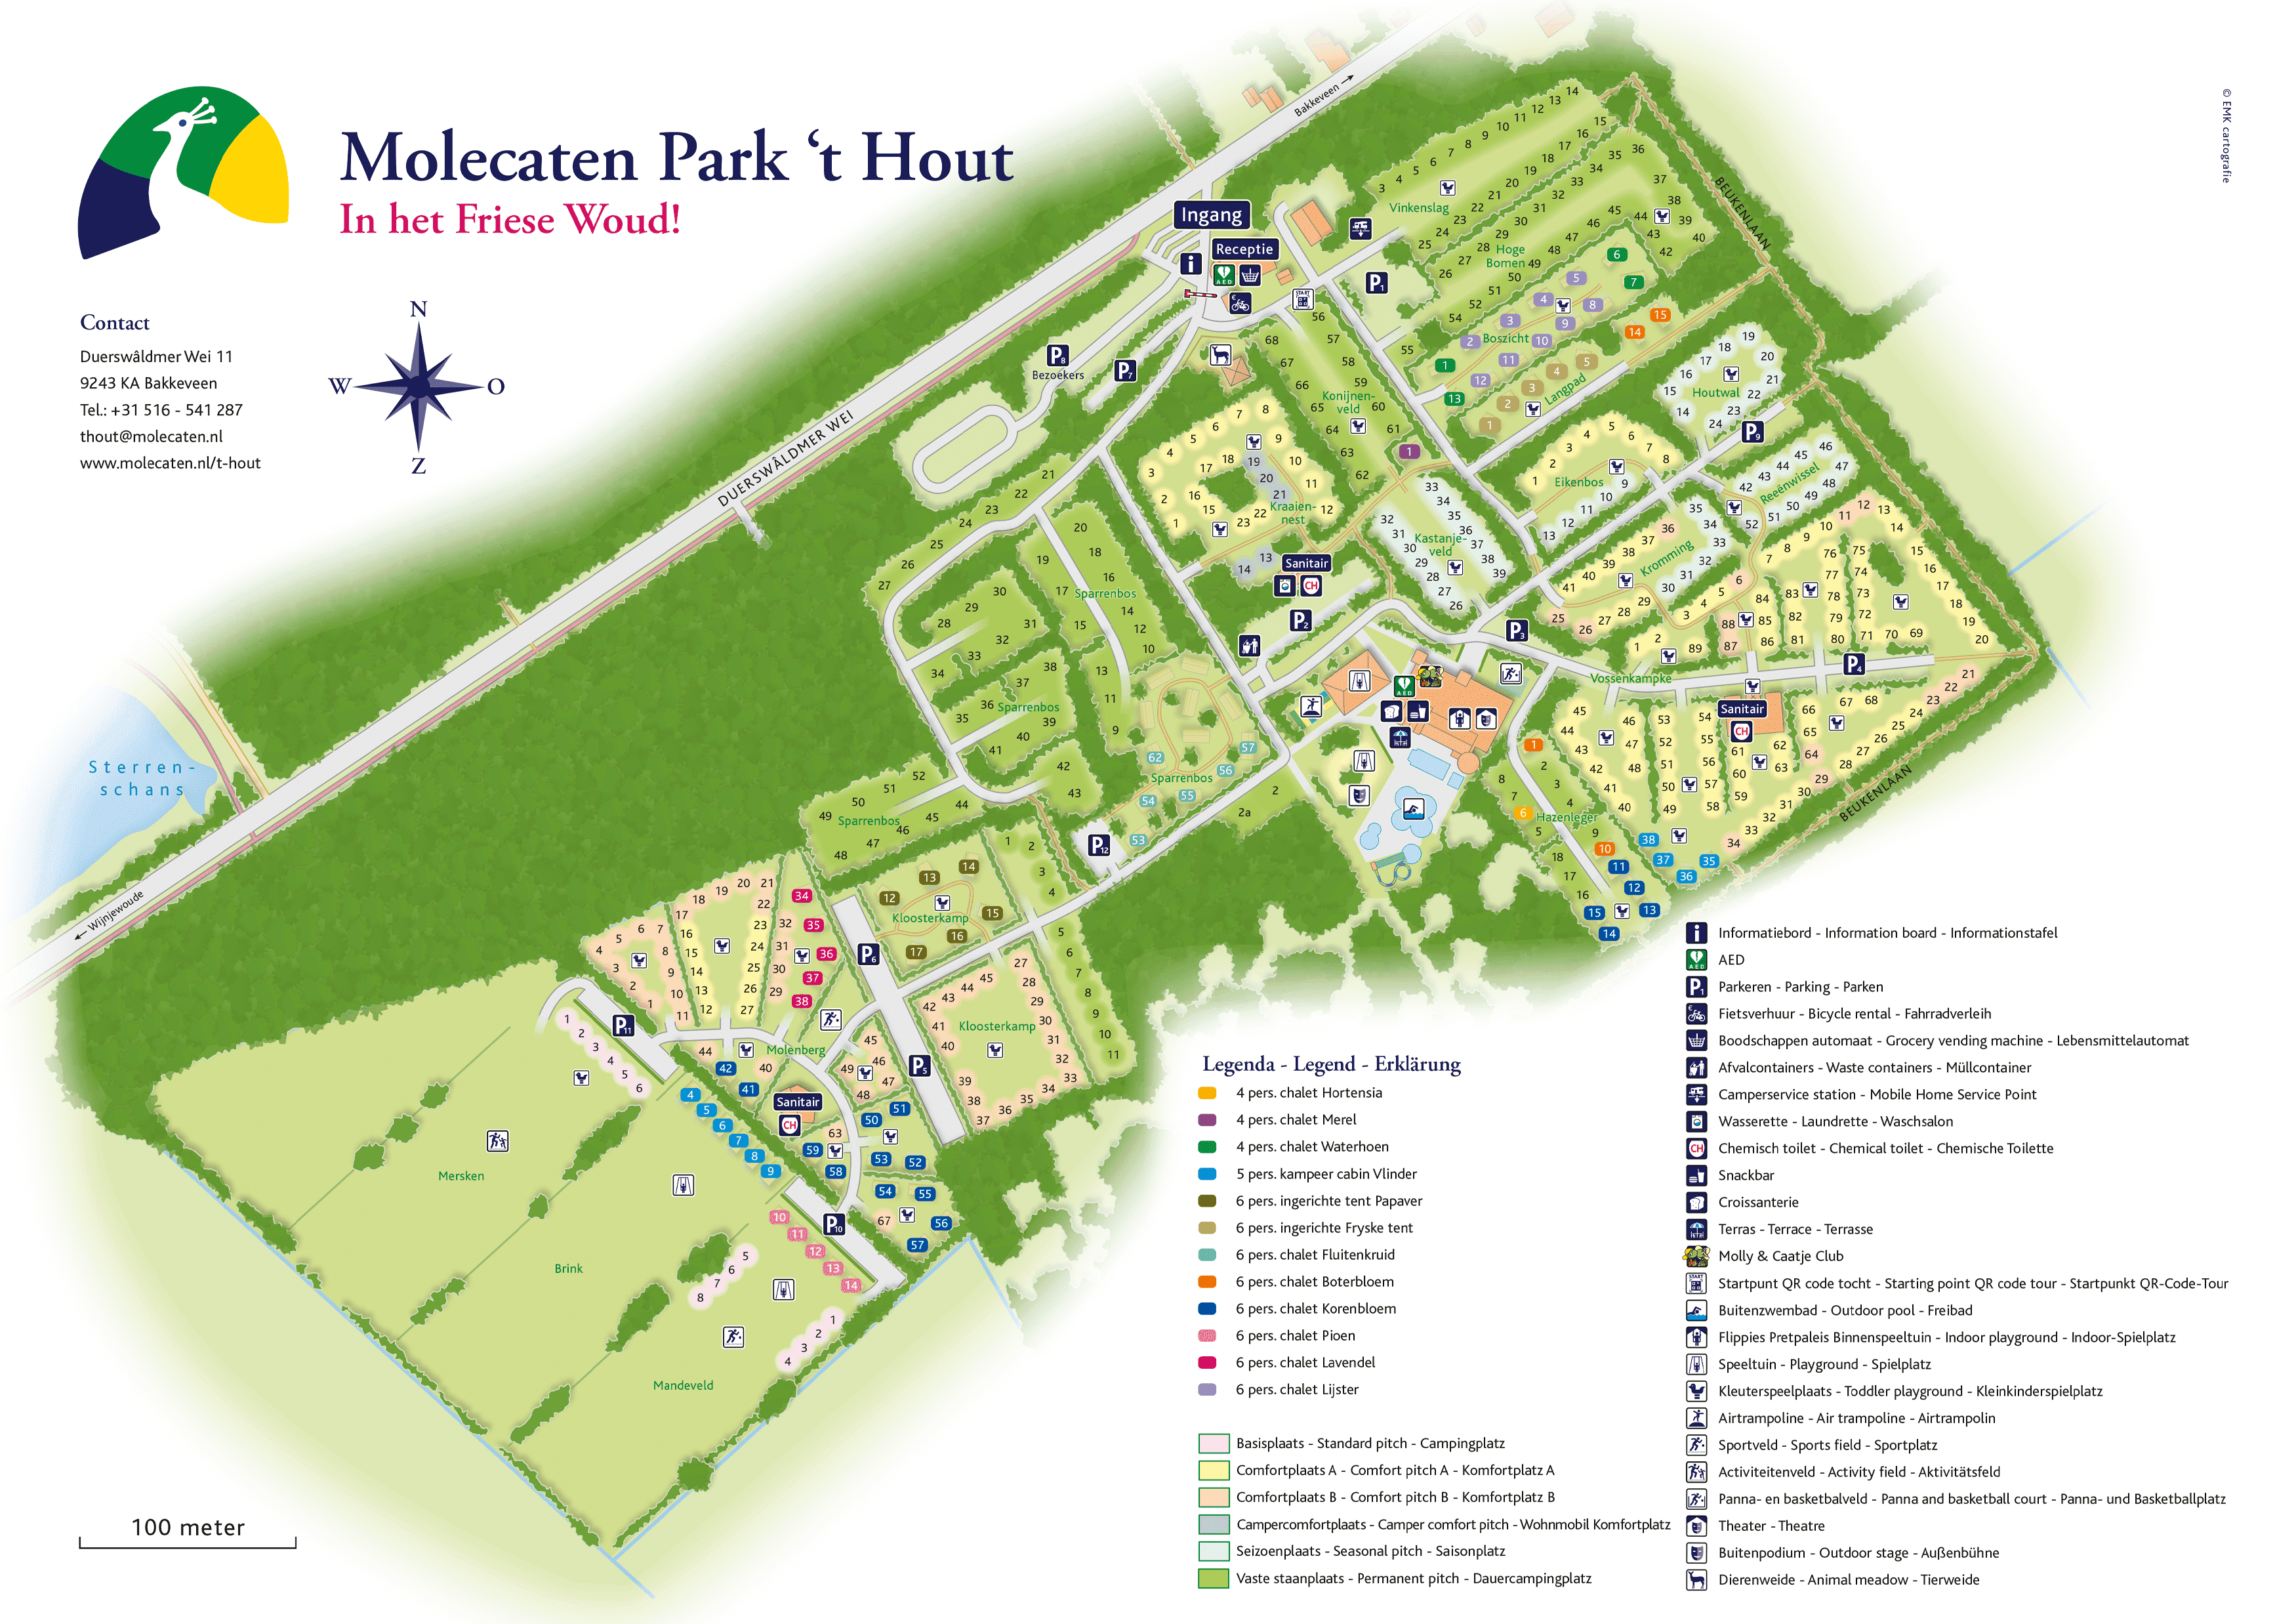 Molecaten Park 't Hout accommodation.parkmap.alttext